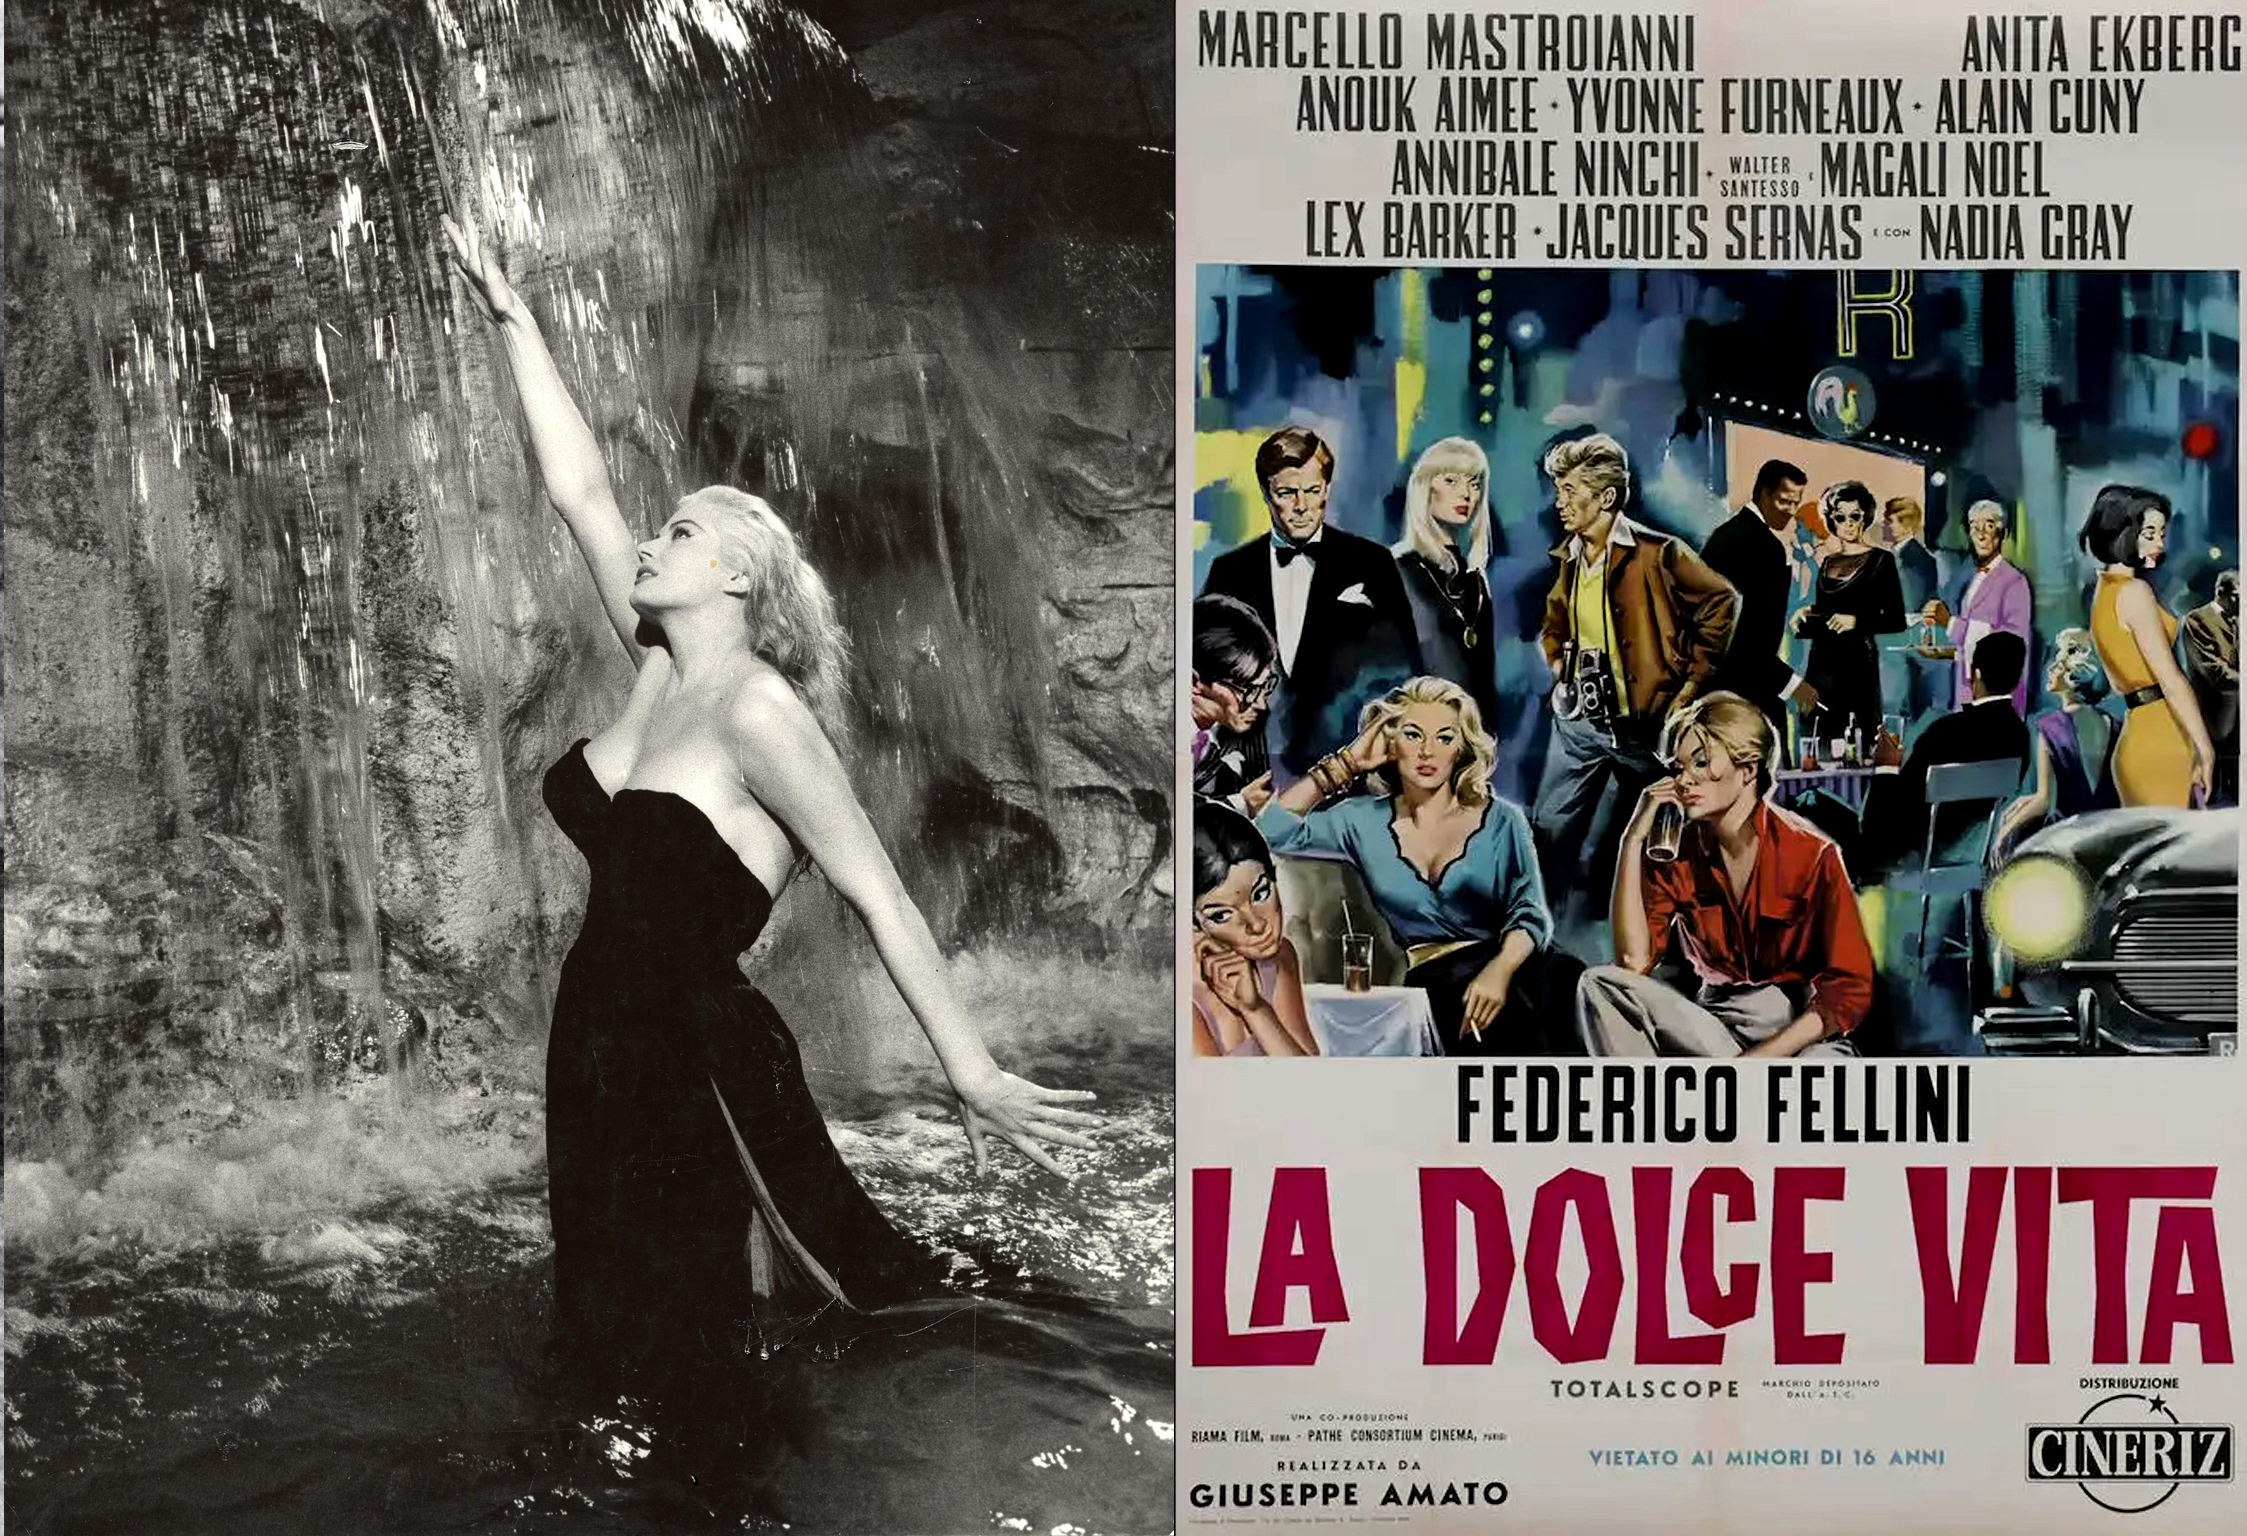 Постер к фильму «Сладкая жизнь» / «La dolce vita», реж. Федерико Феллини, 1960 г. 